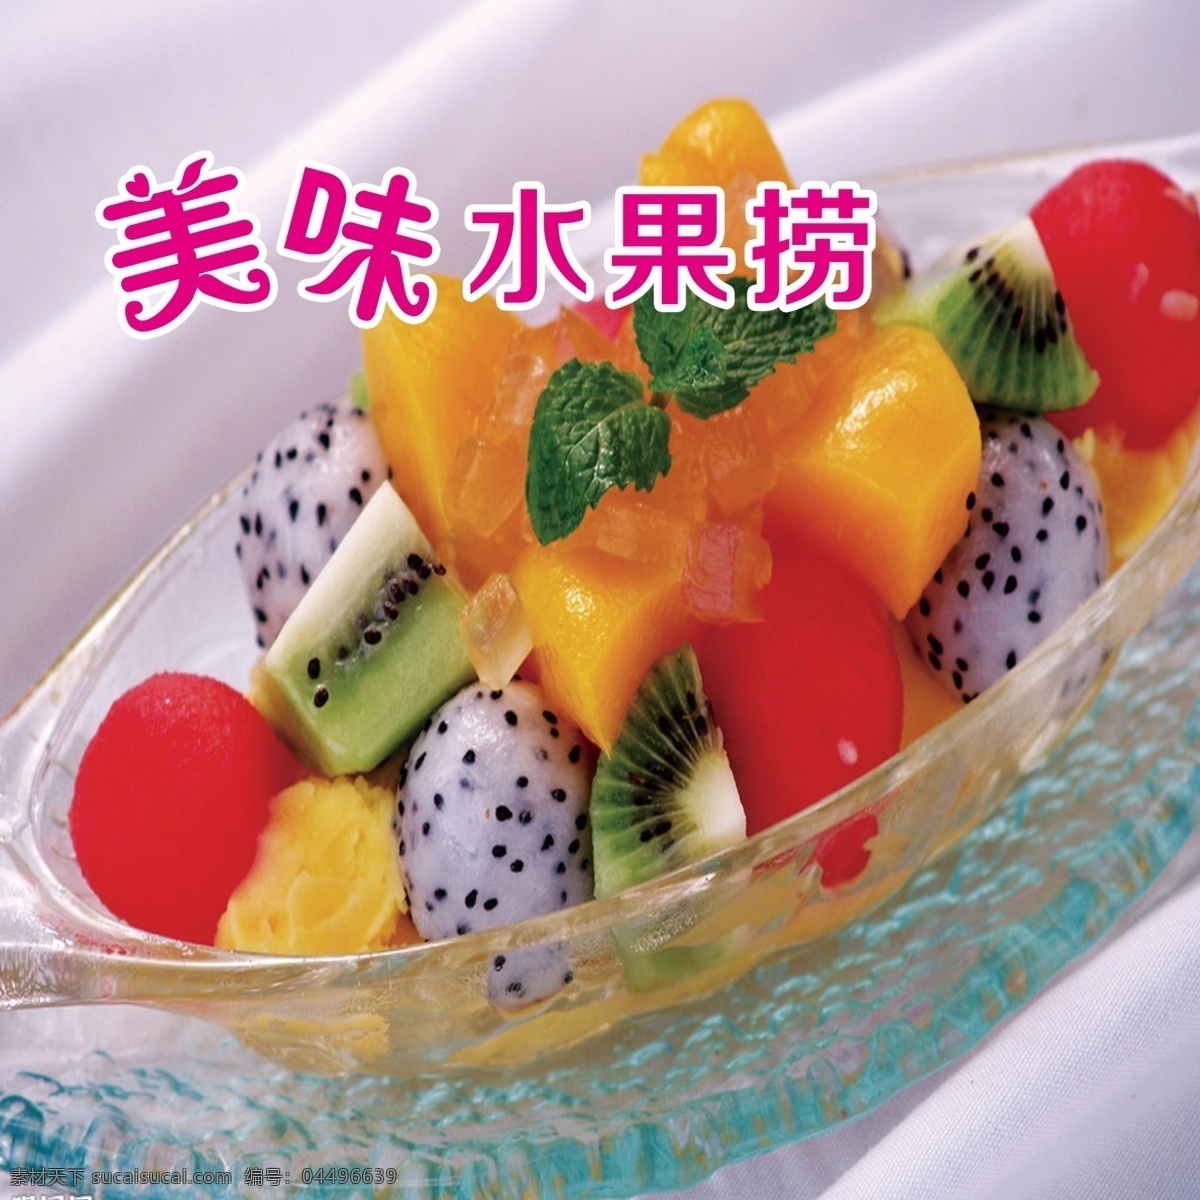 水果捞图片 水果捞 美食 水果 甜品 简约 分层